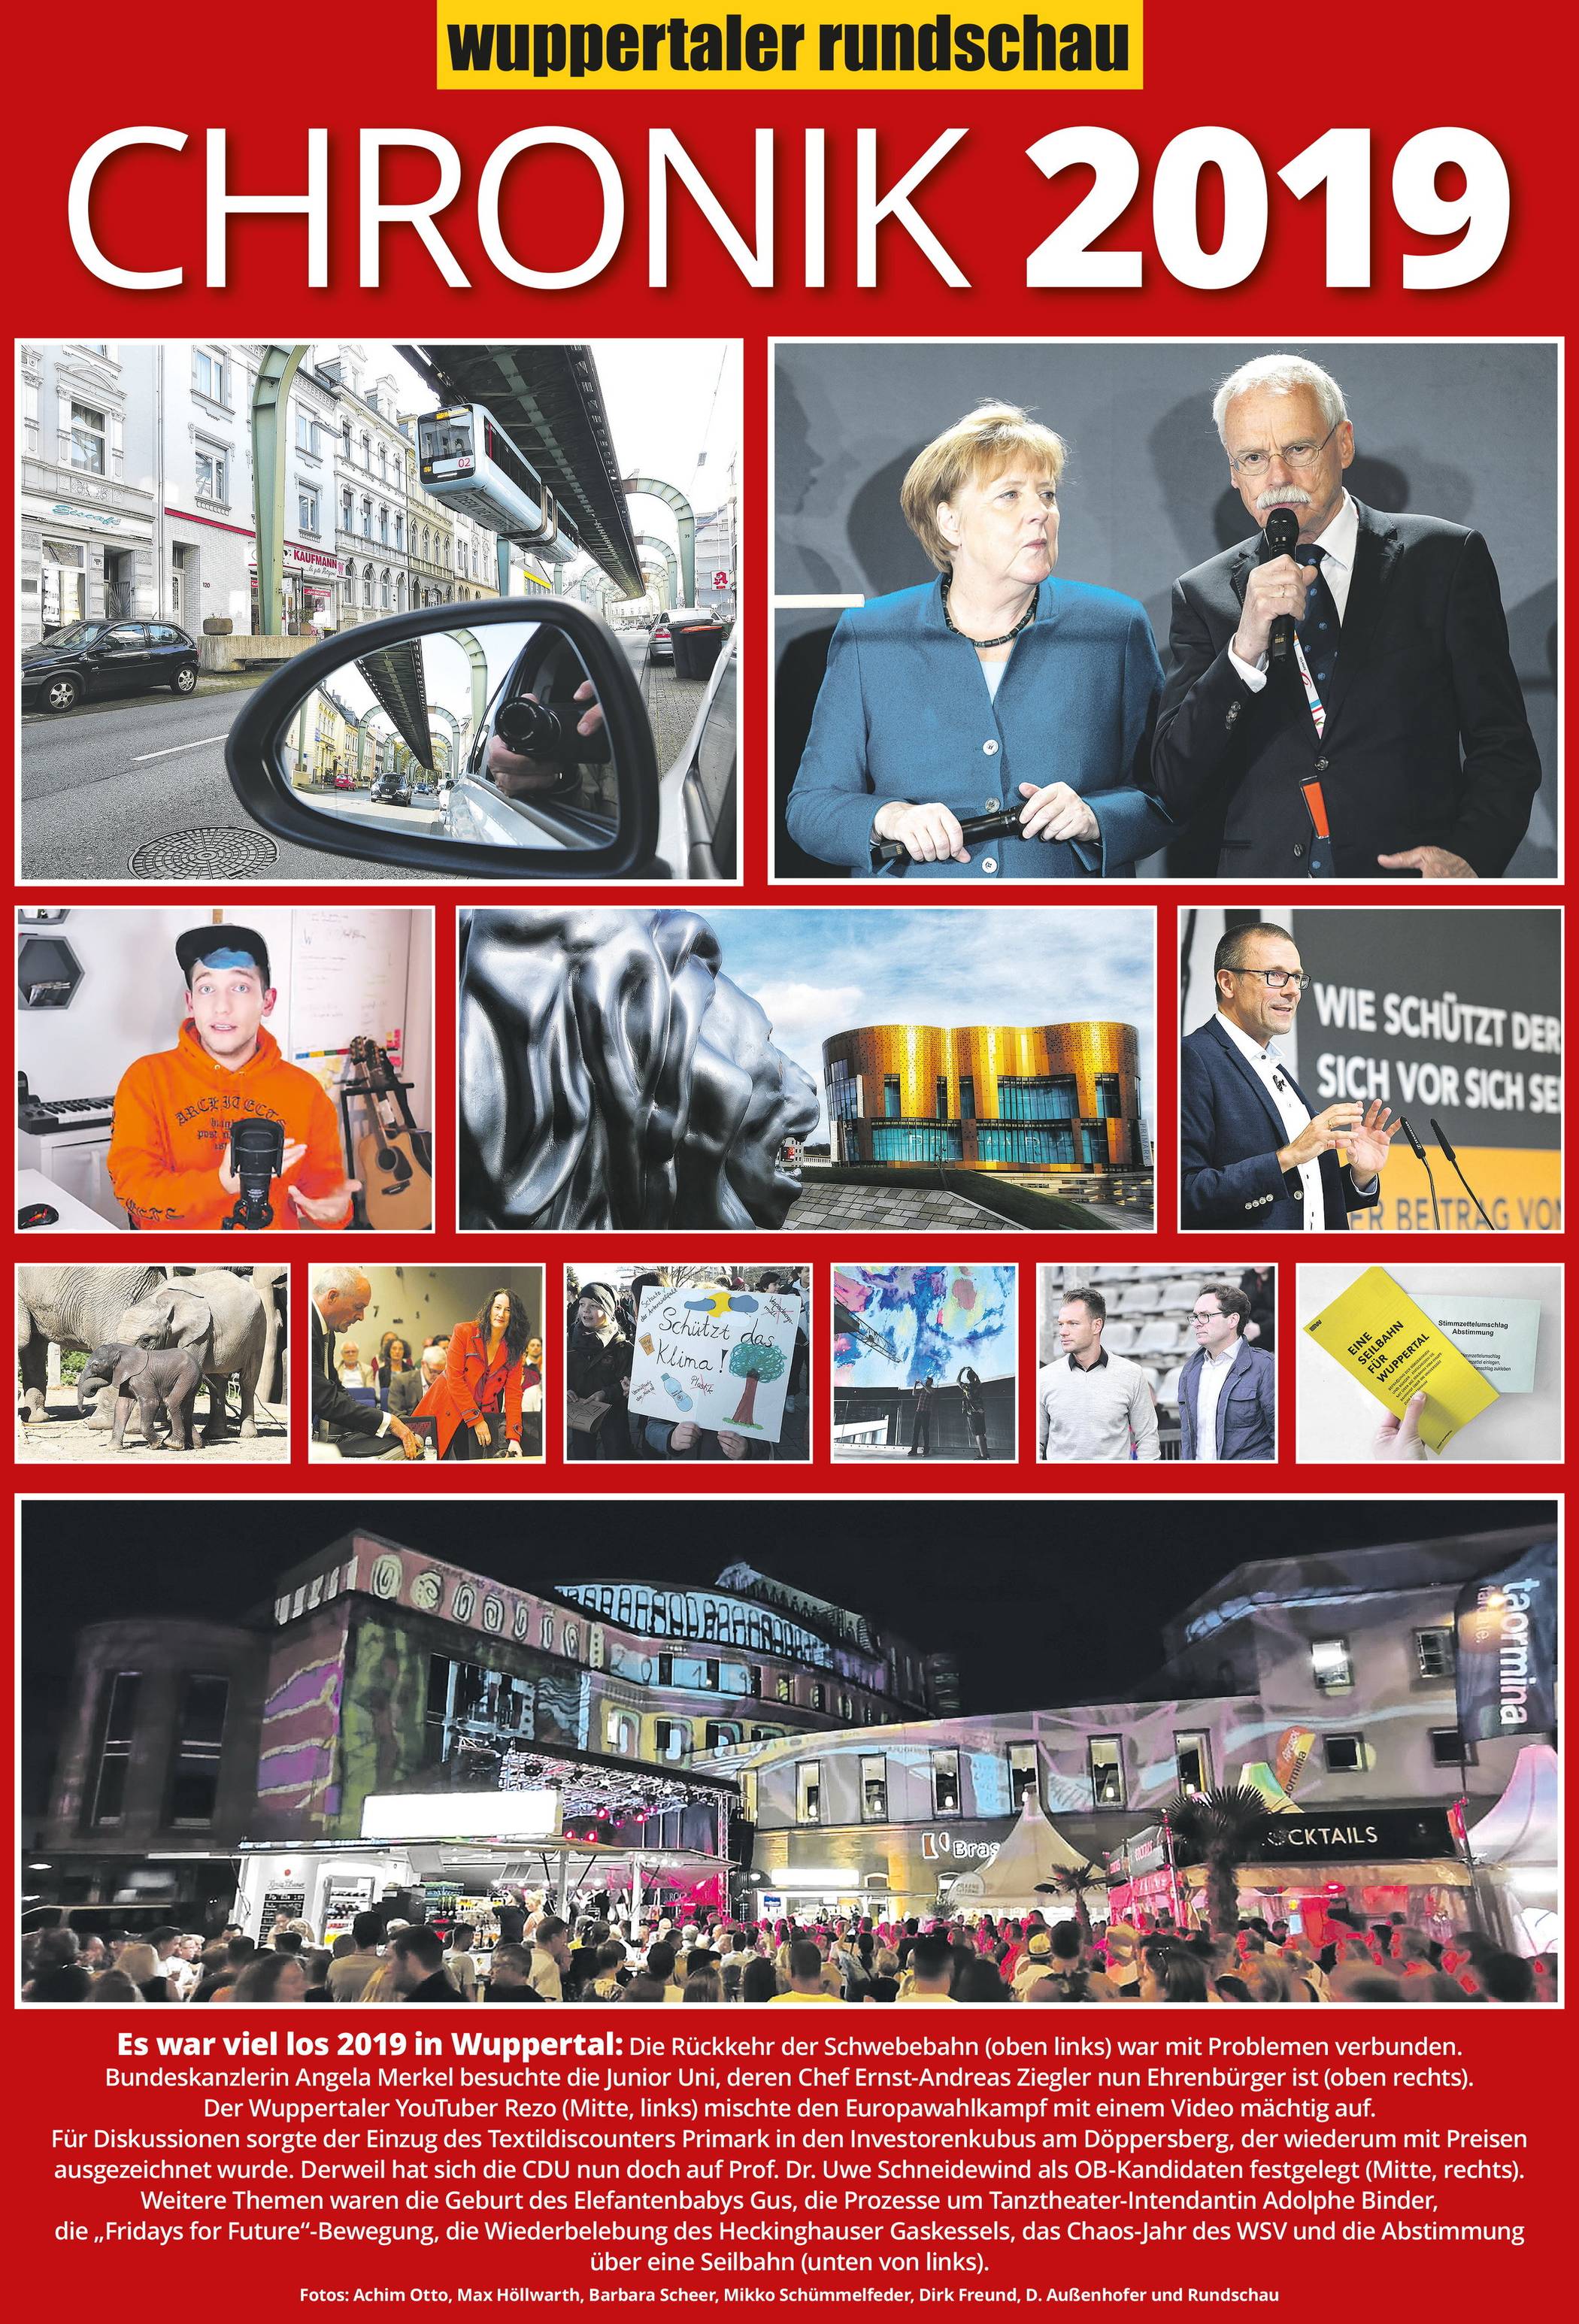 Wuppertals Chronik 2019: W wie Wirtschaft